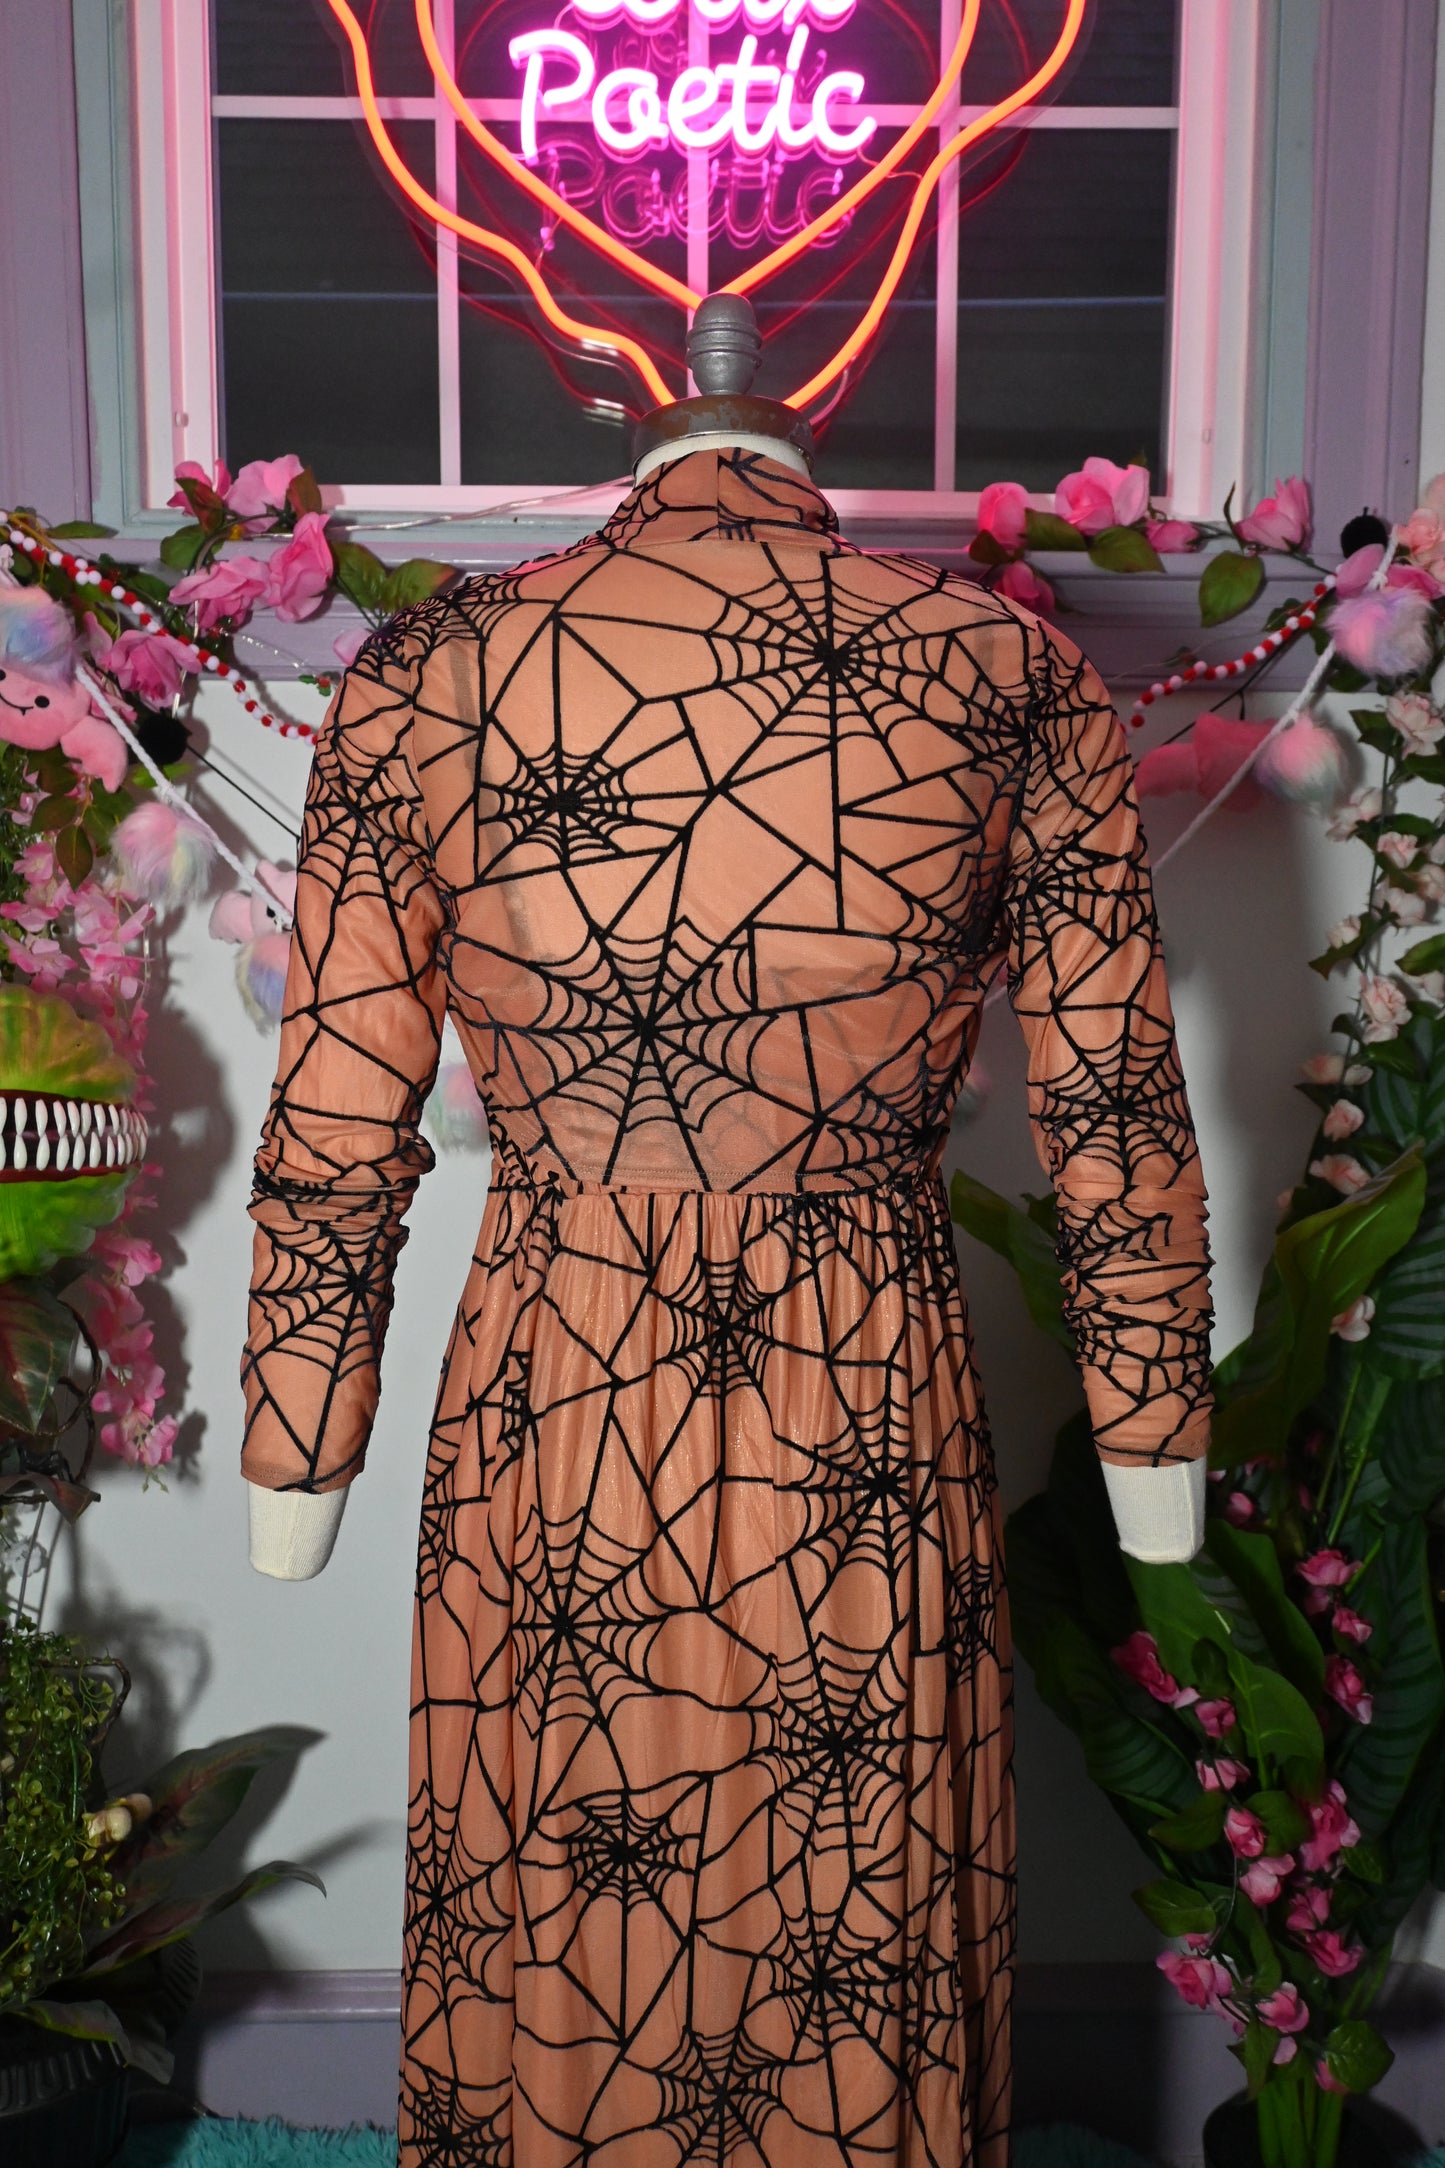 *PRE ORDER* Willow Spiderweb Maxi Dress and Bolero in Vintage Peach